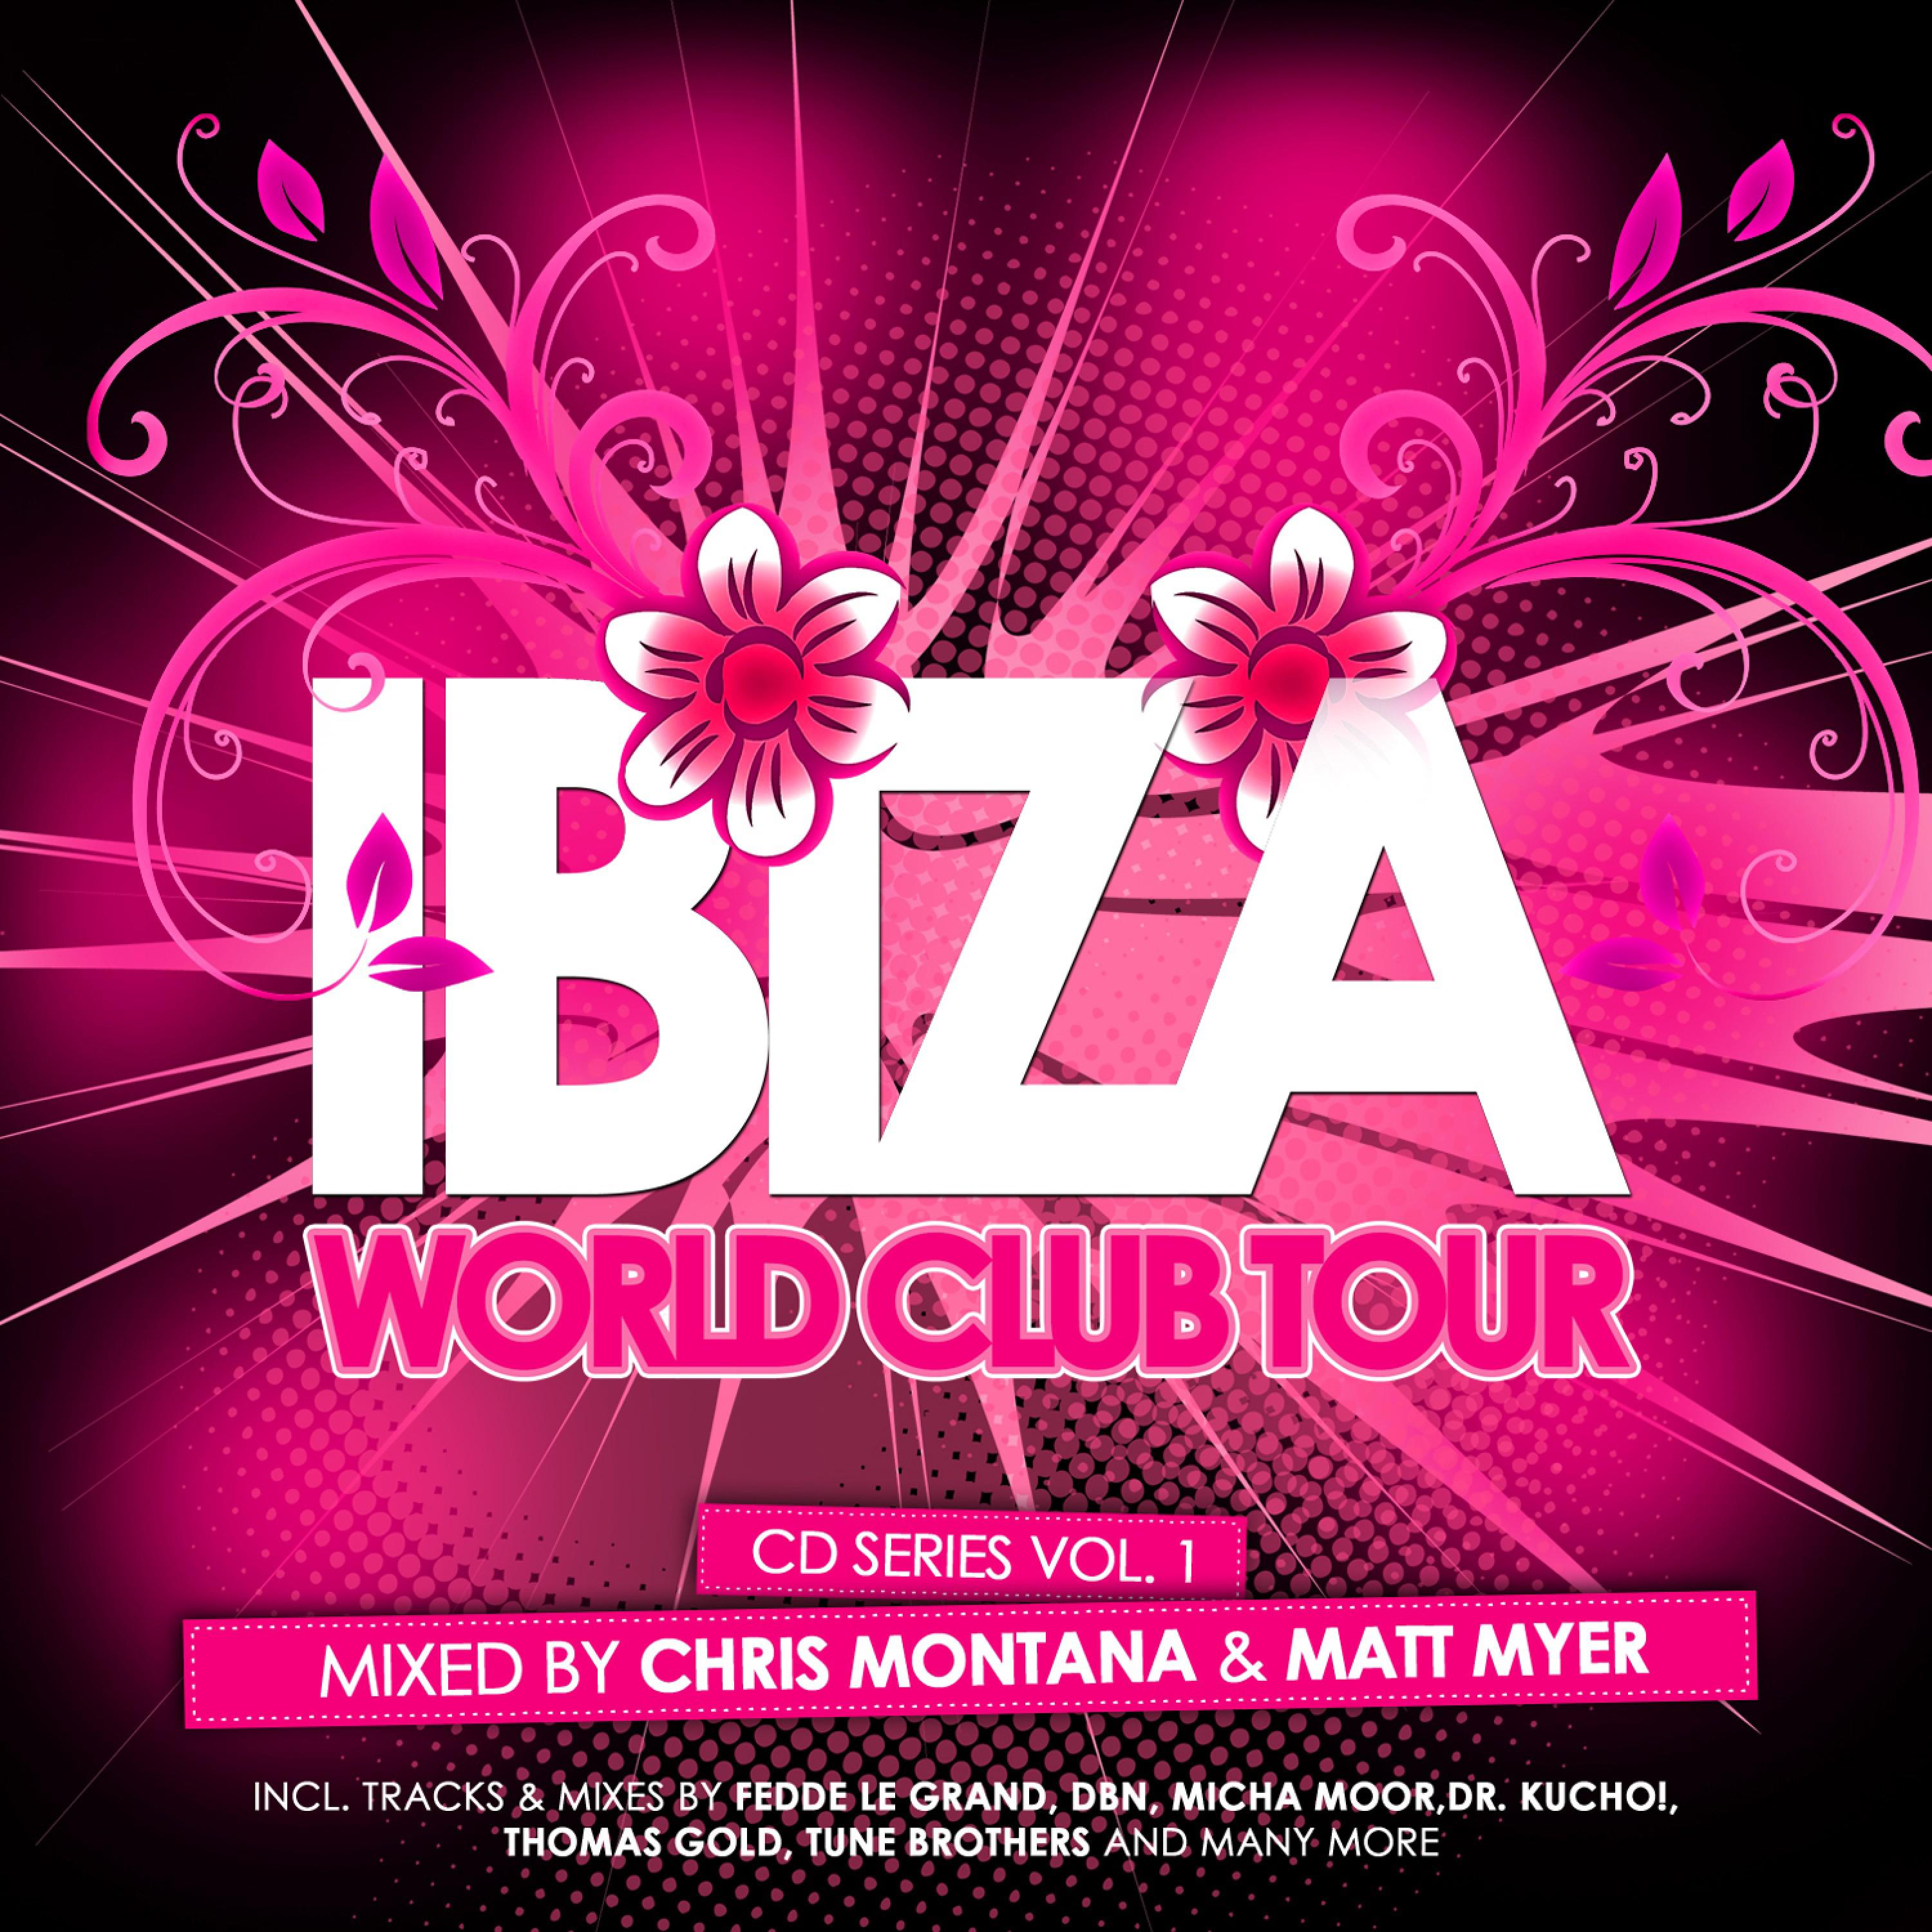 Ibiza World Club Tour Cd Series Vol. 1